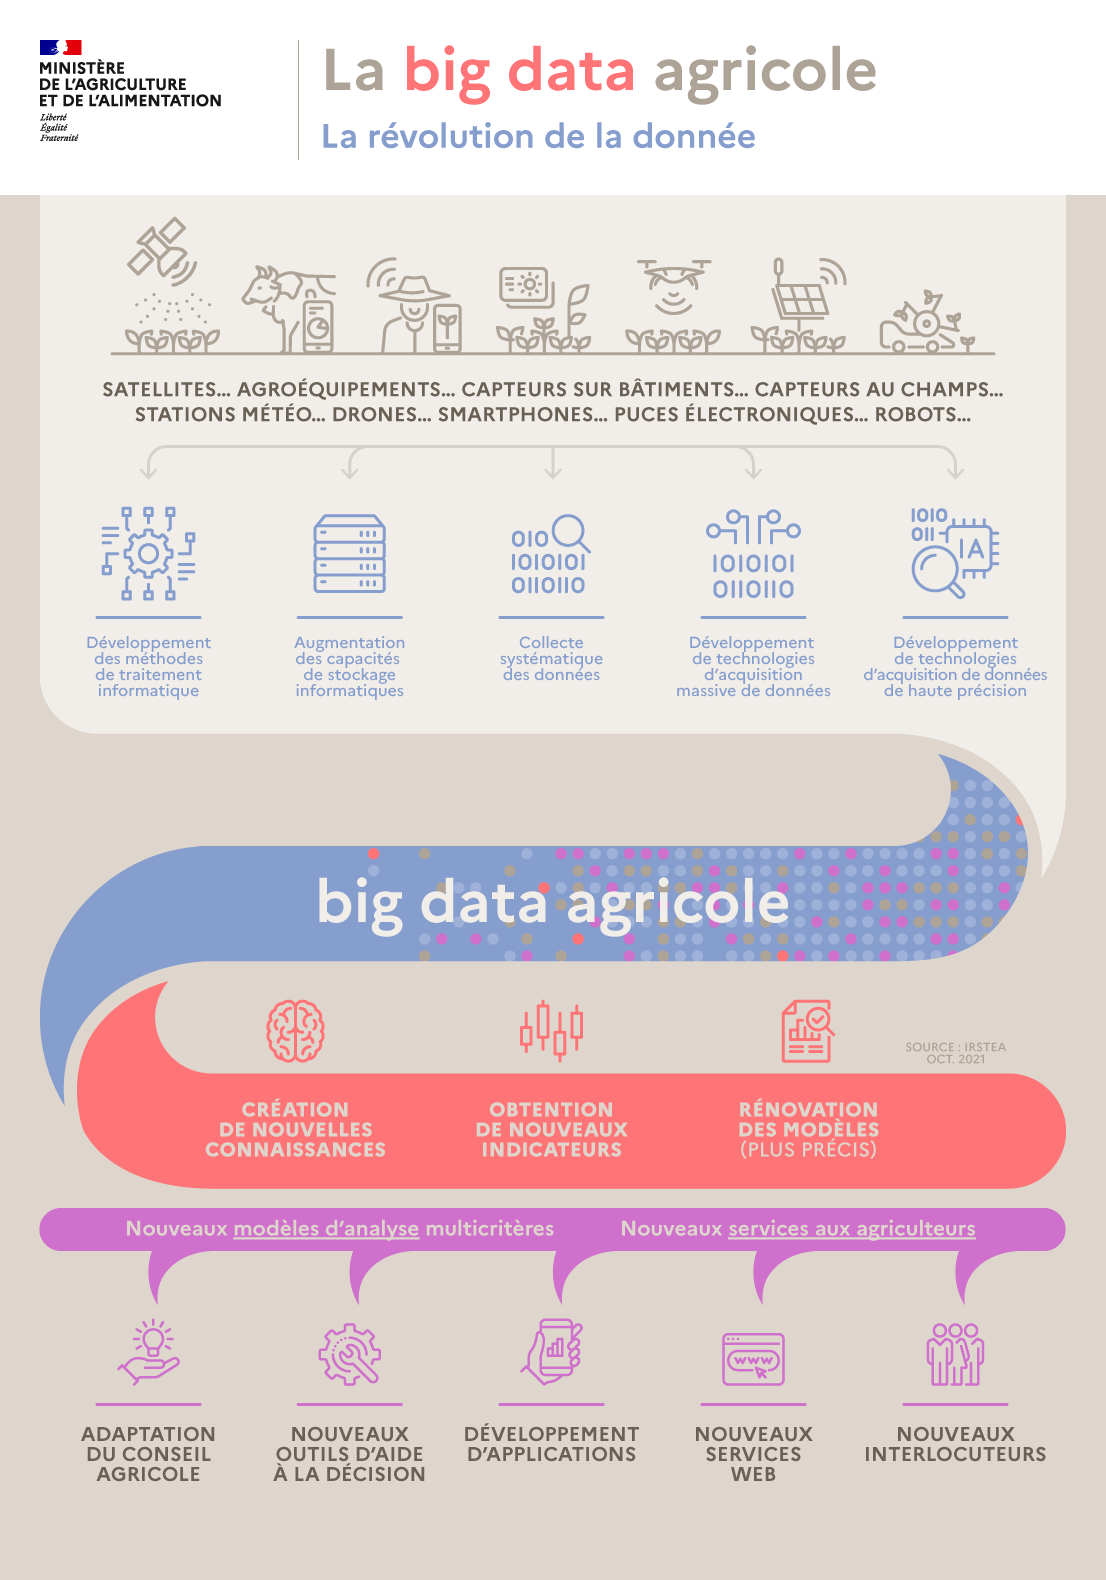 Infographie de la big data agricole